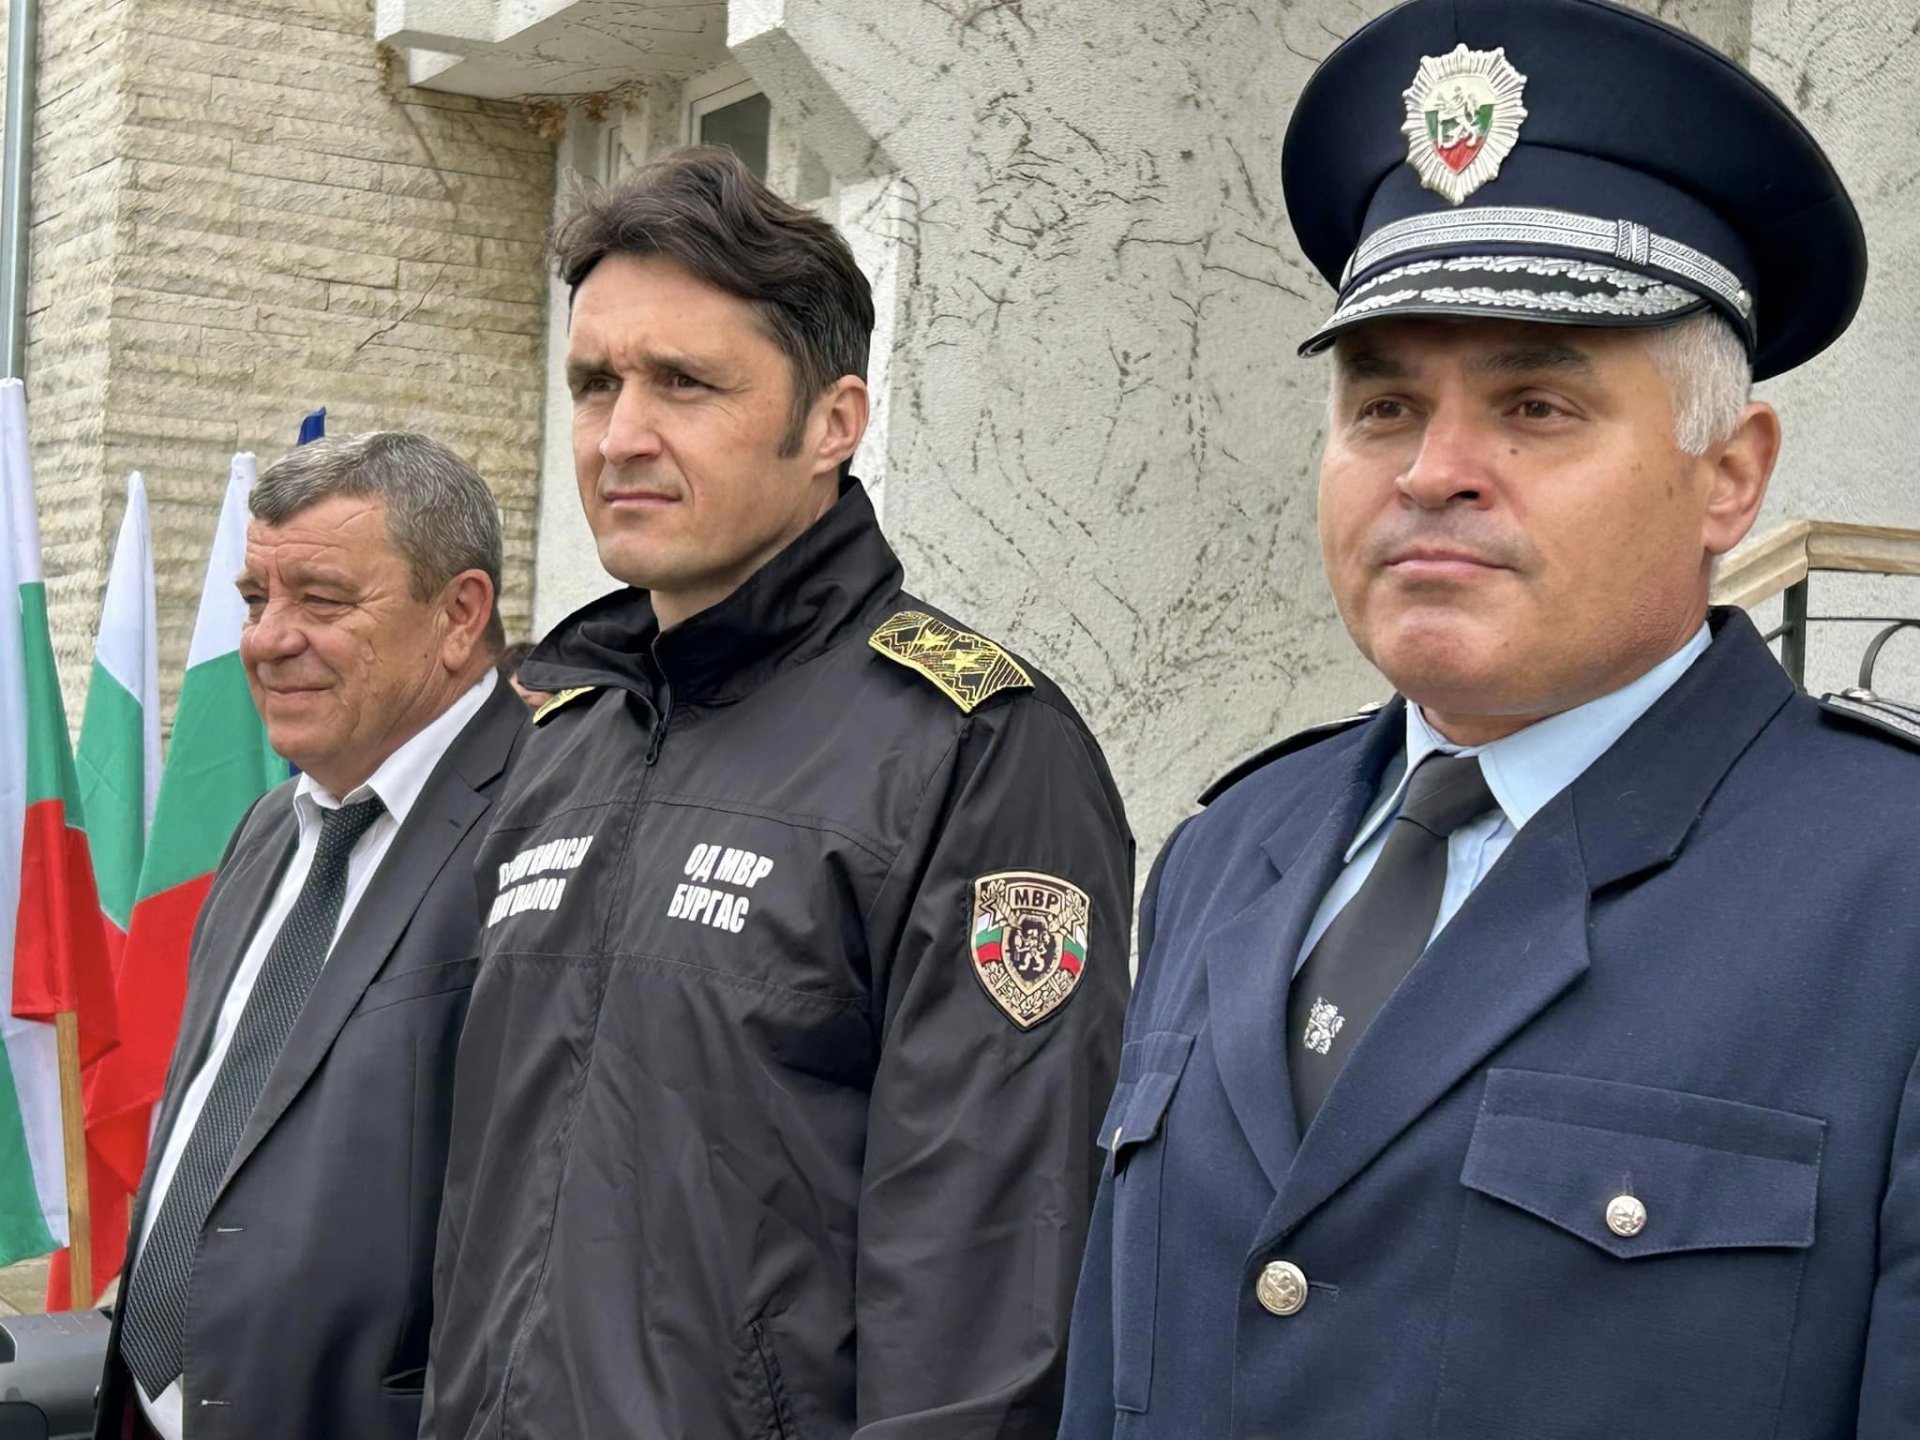 Главен комисар Емил Павлов (в средата) и главен инспектор Михаил Георгиев. Вляво е кметът на Камено Жельо Вардунски